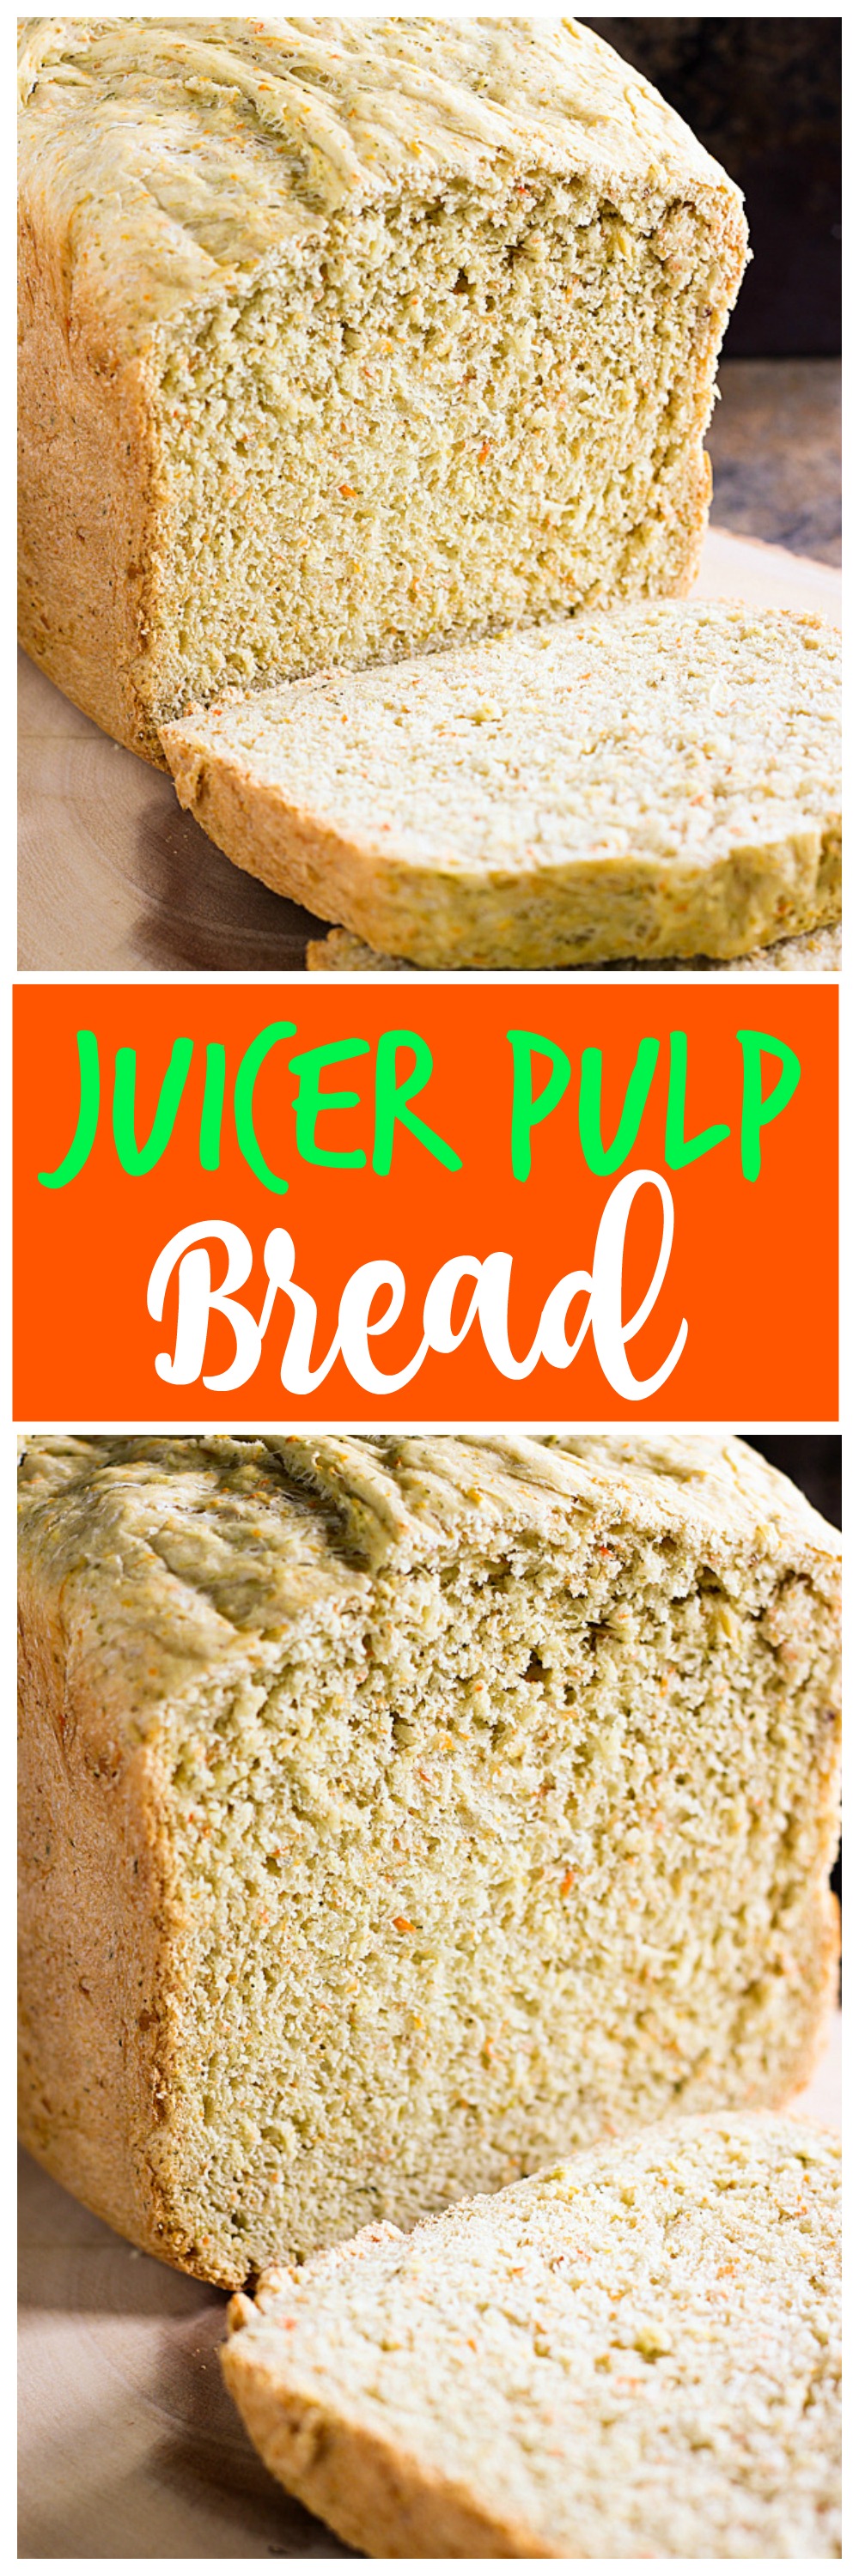 Juicer Pulp Bread